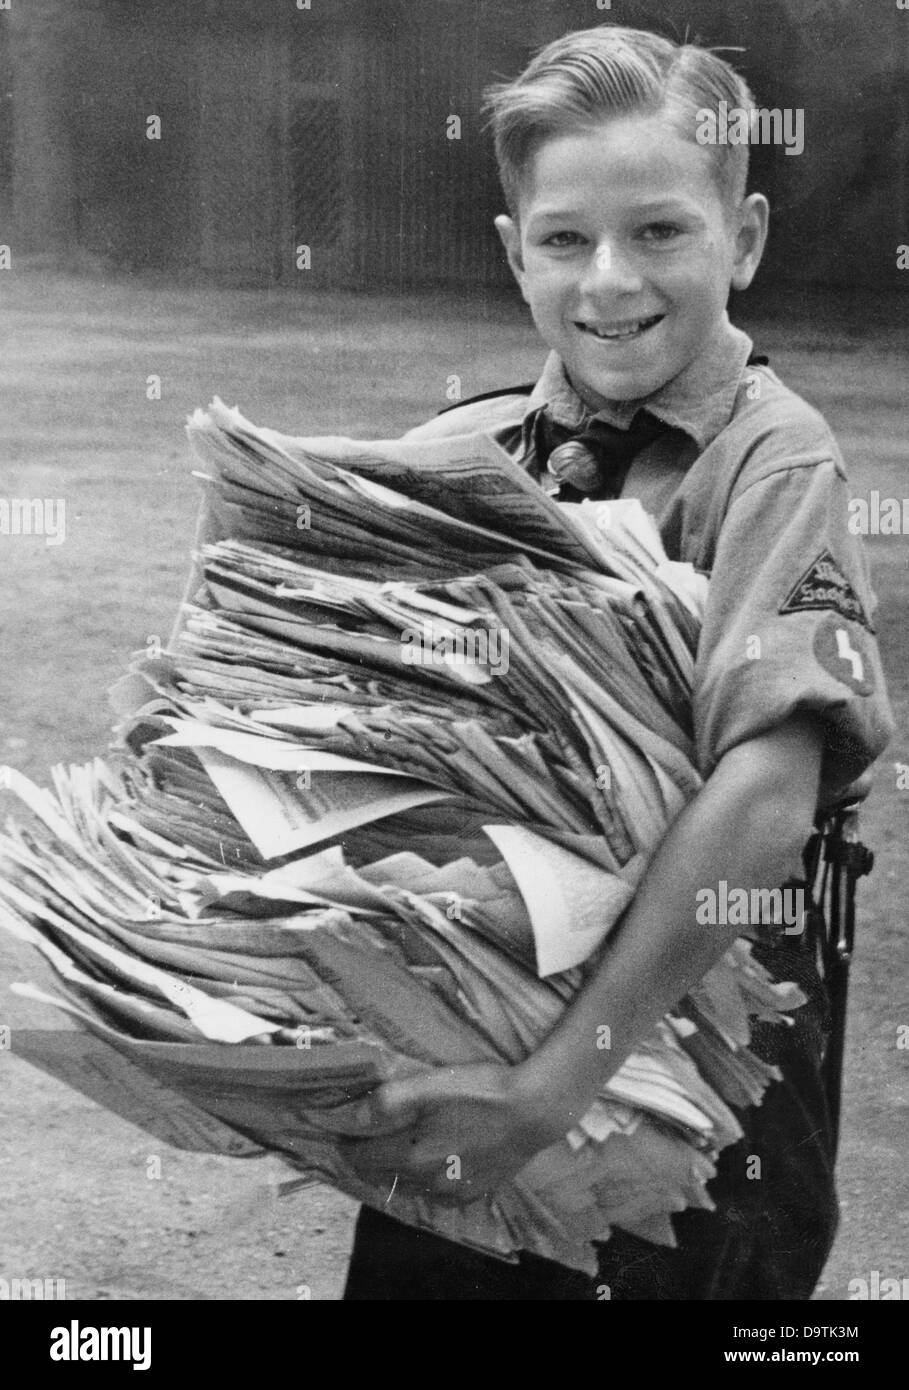 Un ragazzo, che indossa l'uniforme della Gioventù tedesca, ha raccolto vecchi giornali e li sta portando al punto di raccolta della carta dei rifiuti, nell'agosto 1942. Fotoarchiv für Zeitgeschichte Foto Stock